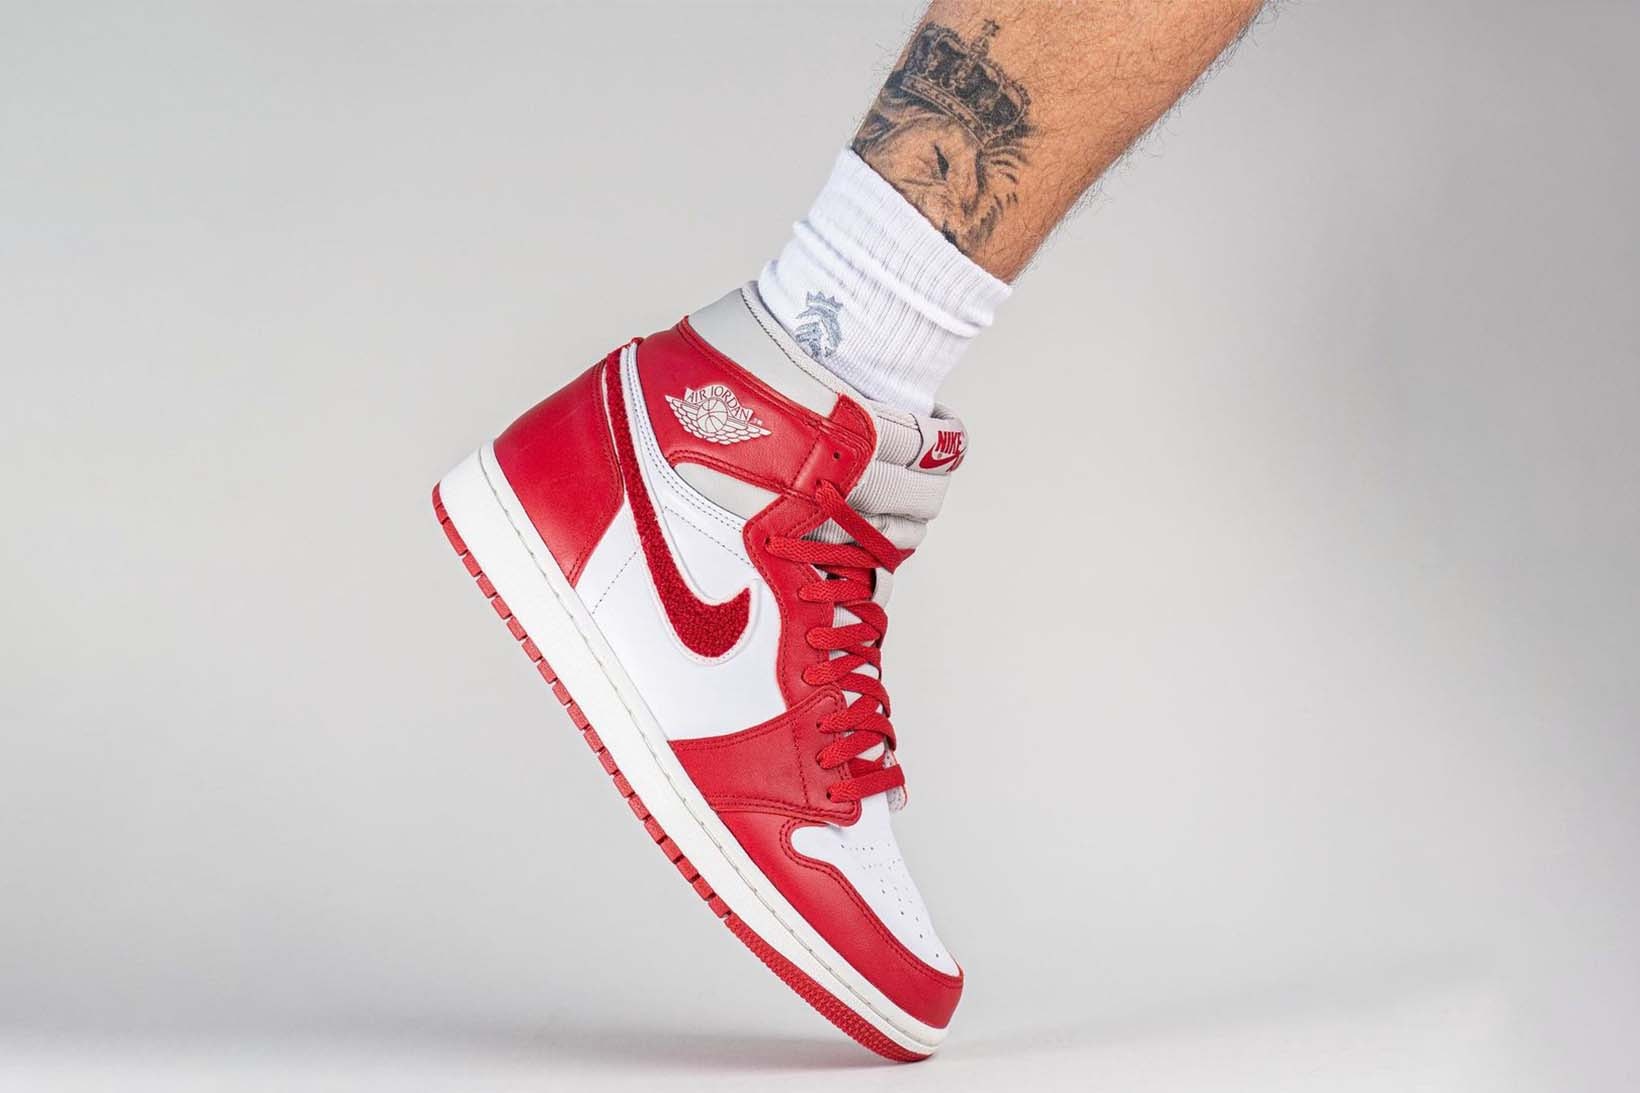 Nike Air Jordan 1 High OG Women's Chenille Varsity Red On Foot Photos Price Release Date